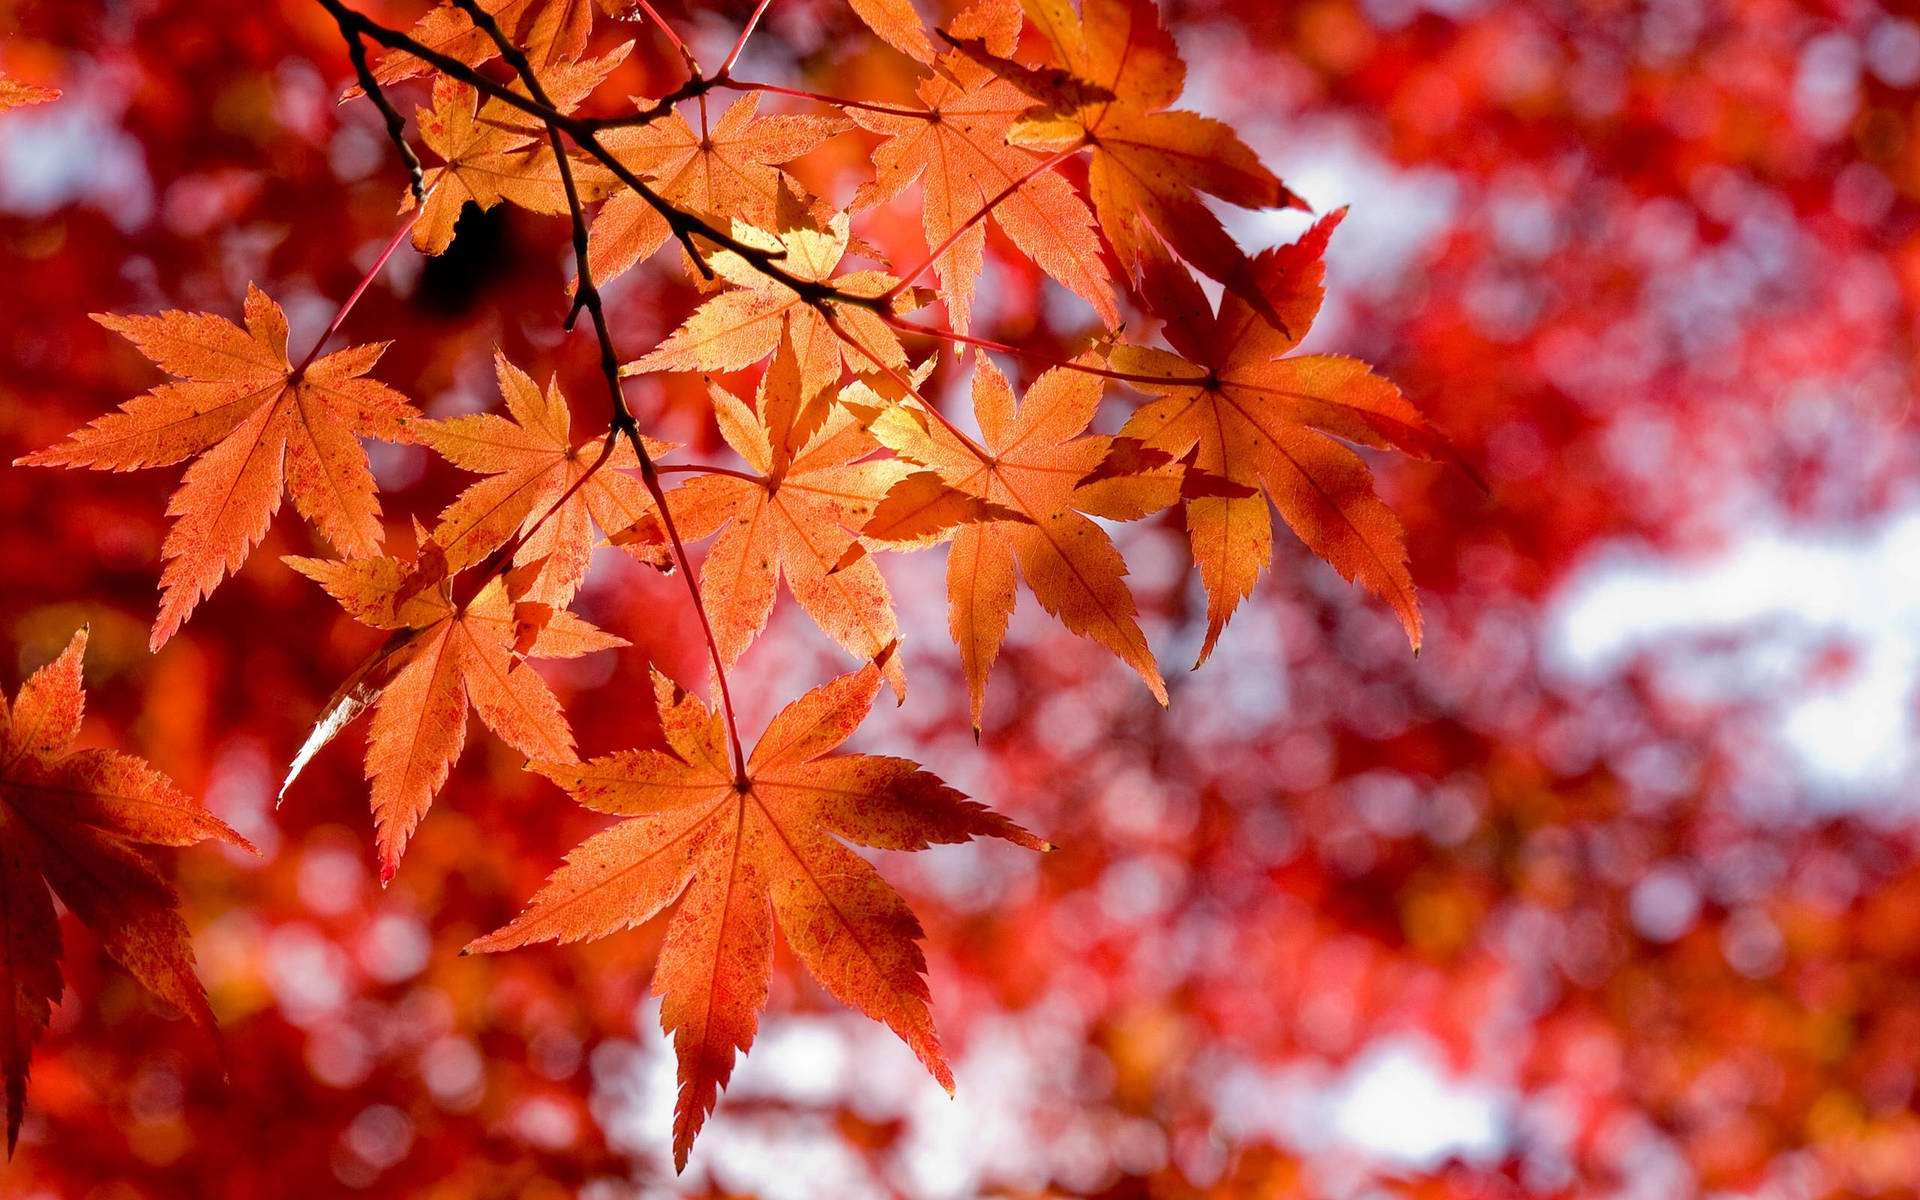 Aesthetic Fall Orange Maple Tree Background